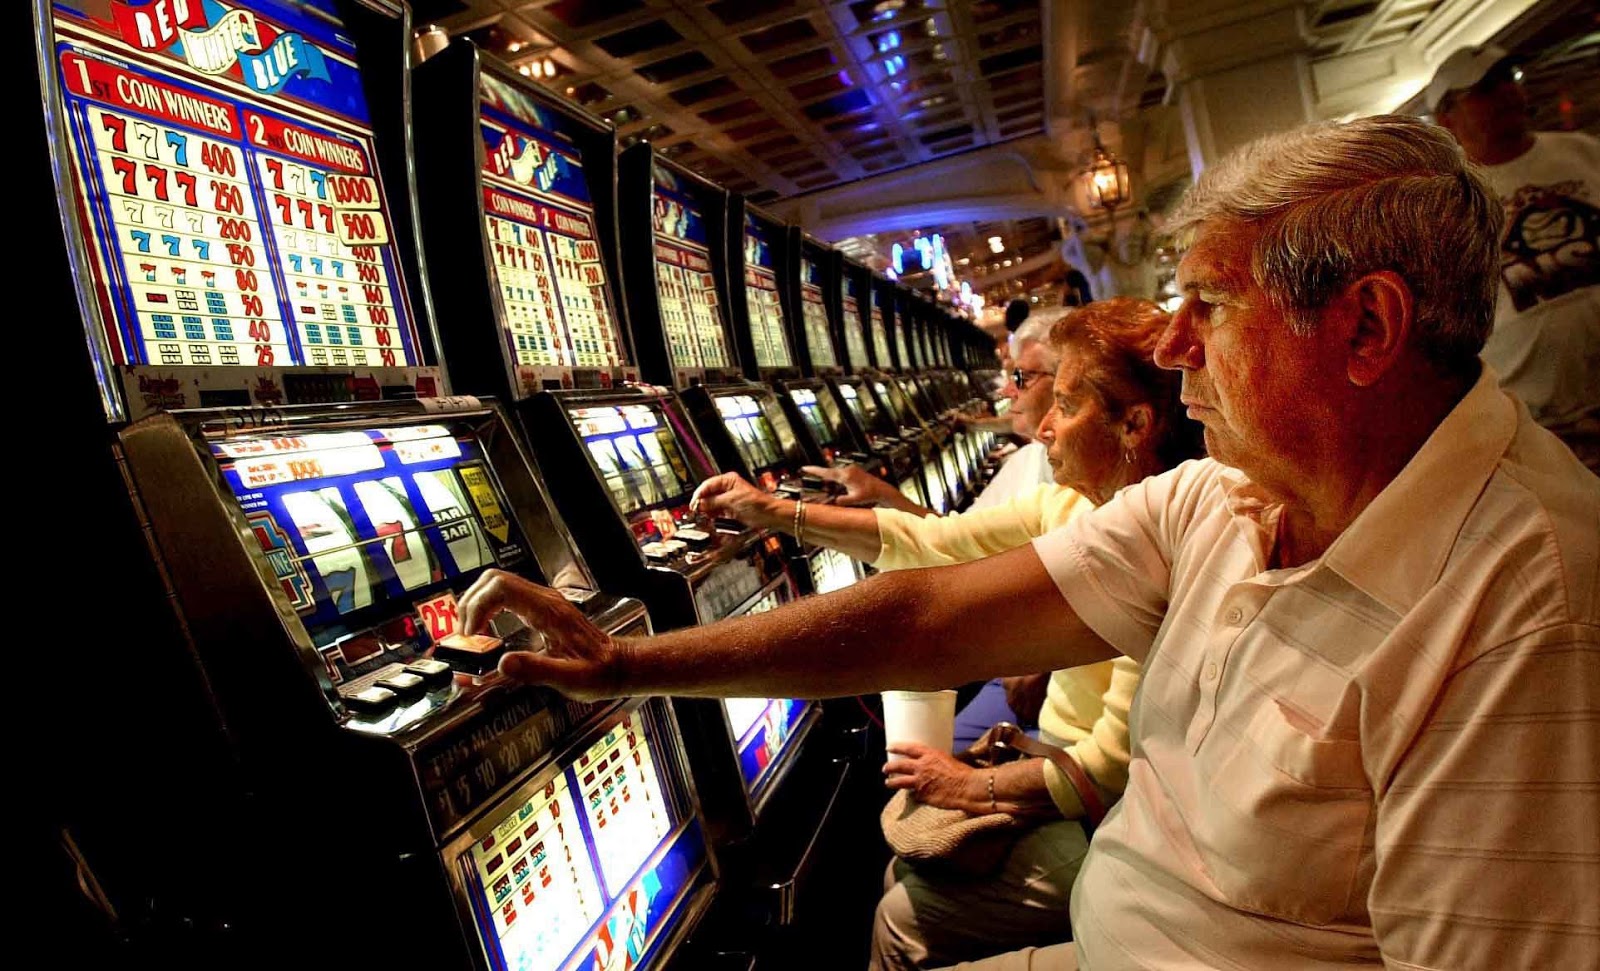  Gioco d’azzardo, una piaga sociale: 4500 persone malate in provincia